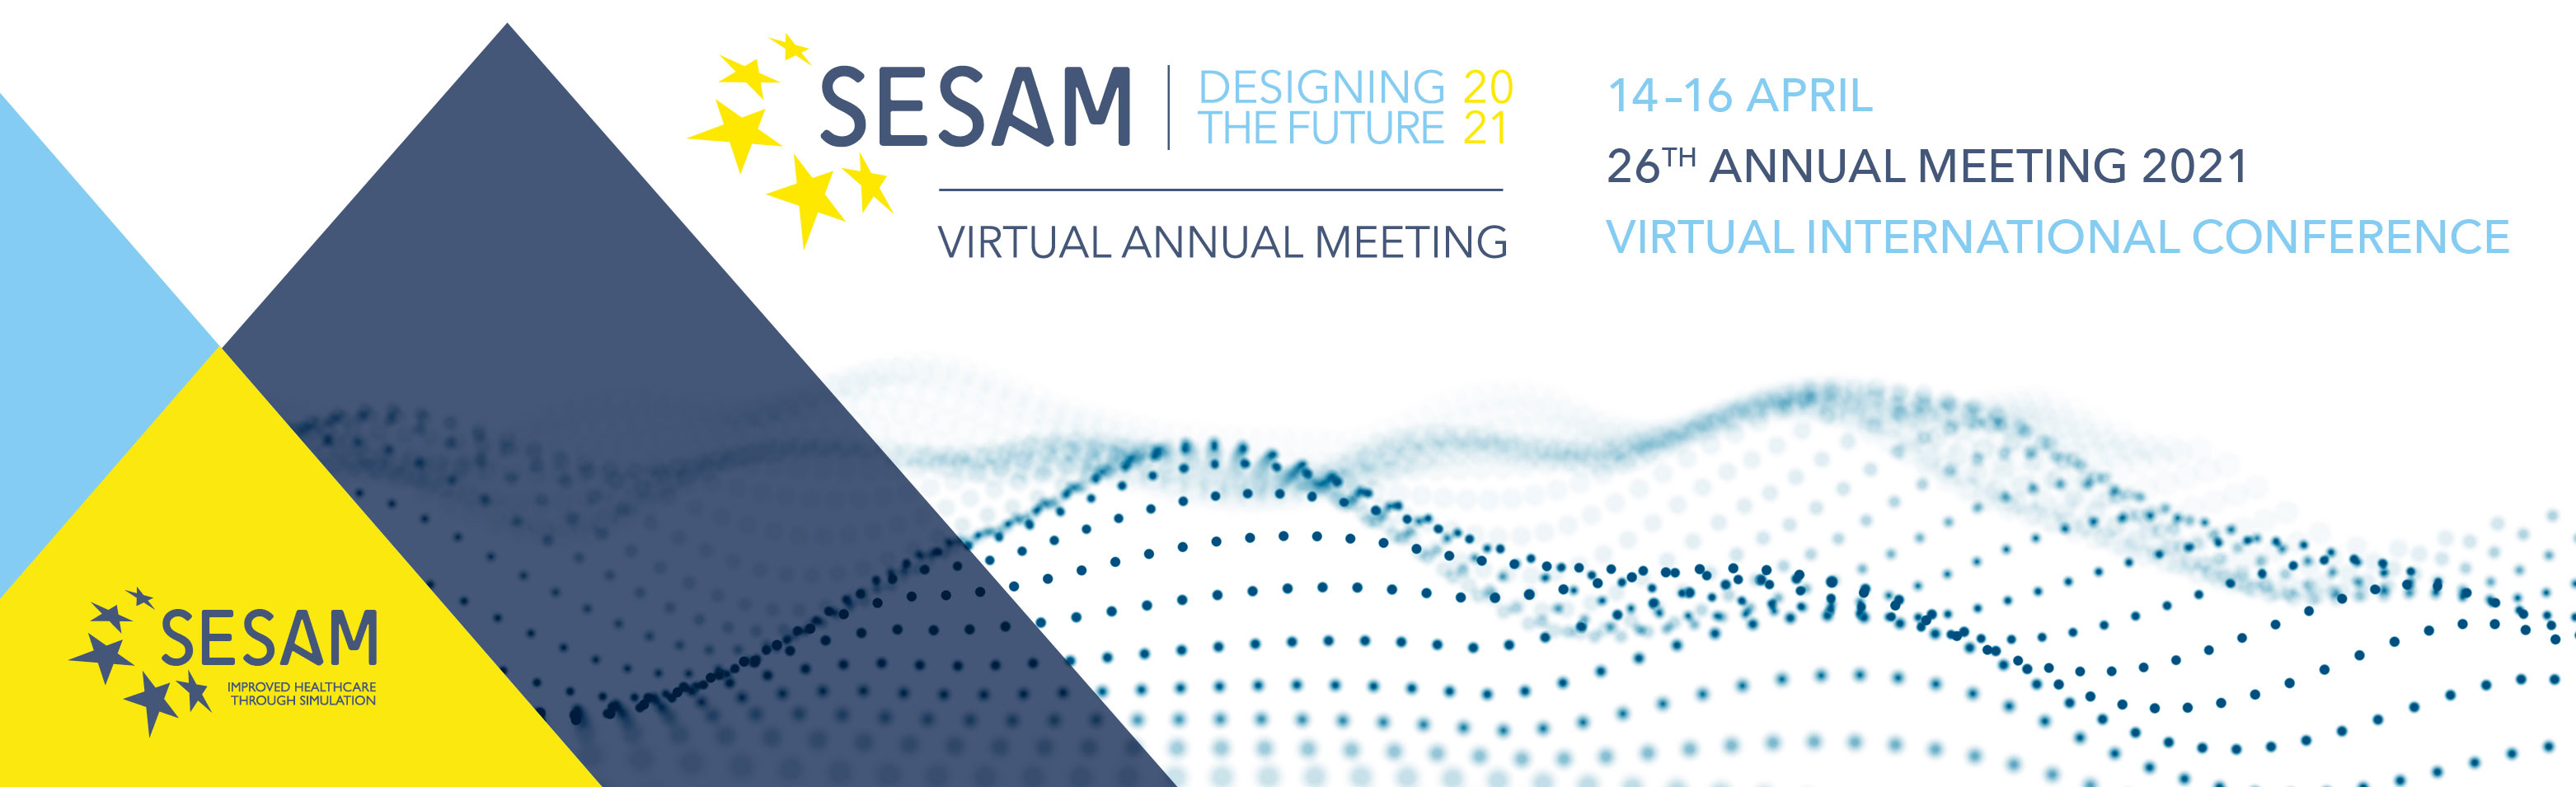 Открытие SESAM-2021, XXVI ежегодной конференции Европейского общества симуляционного обучения в медицине